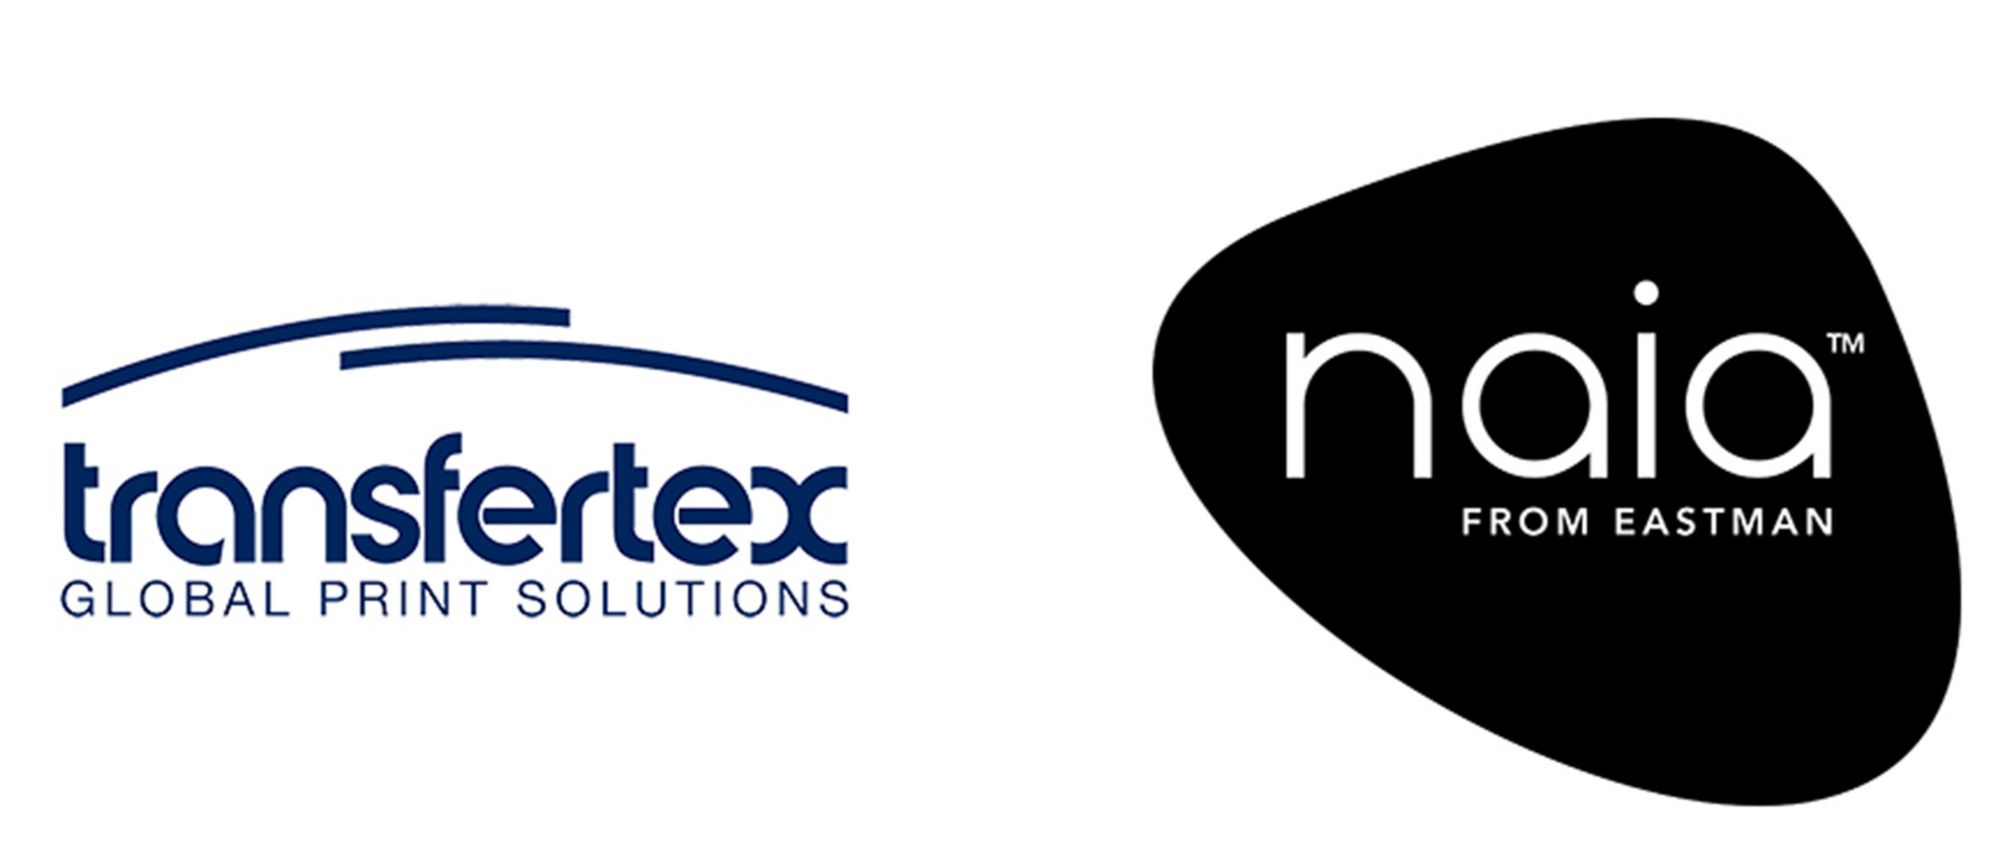 Transfertex and Naia logos 